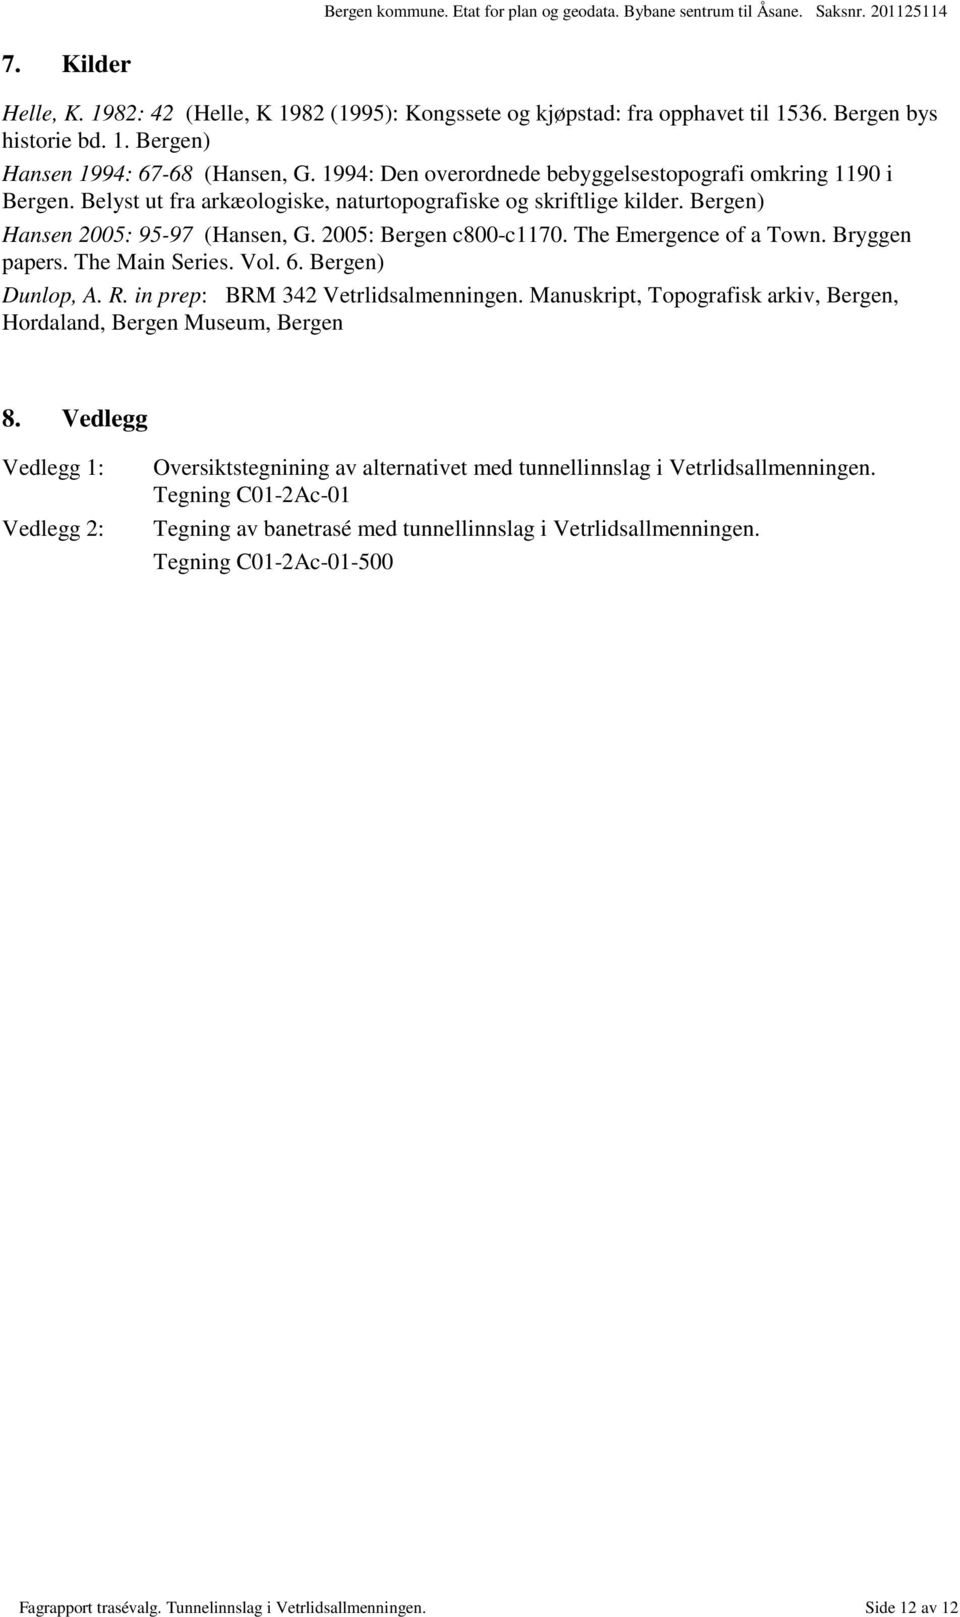 The Emergence of a Town. Bryggen papers. The Main Series. Vol. 6. Bergen) Dunlop, A. R. in prep: BRM 342 Vetrlidsalmenningen. Manuskript, Topografisk arkiv, Bergen, Hordaland, Bergen Museum, Bergen 8.